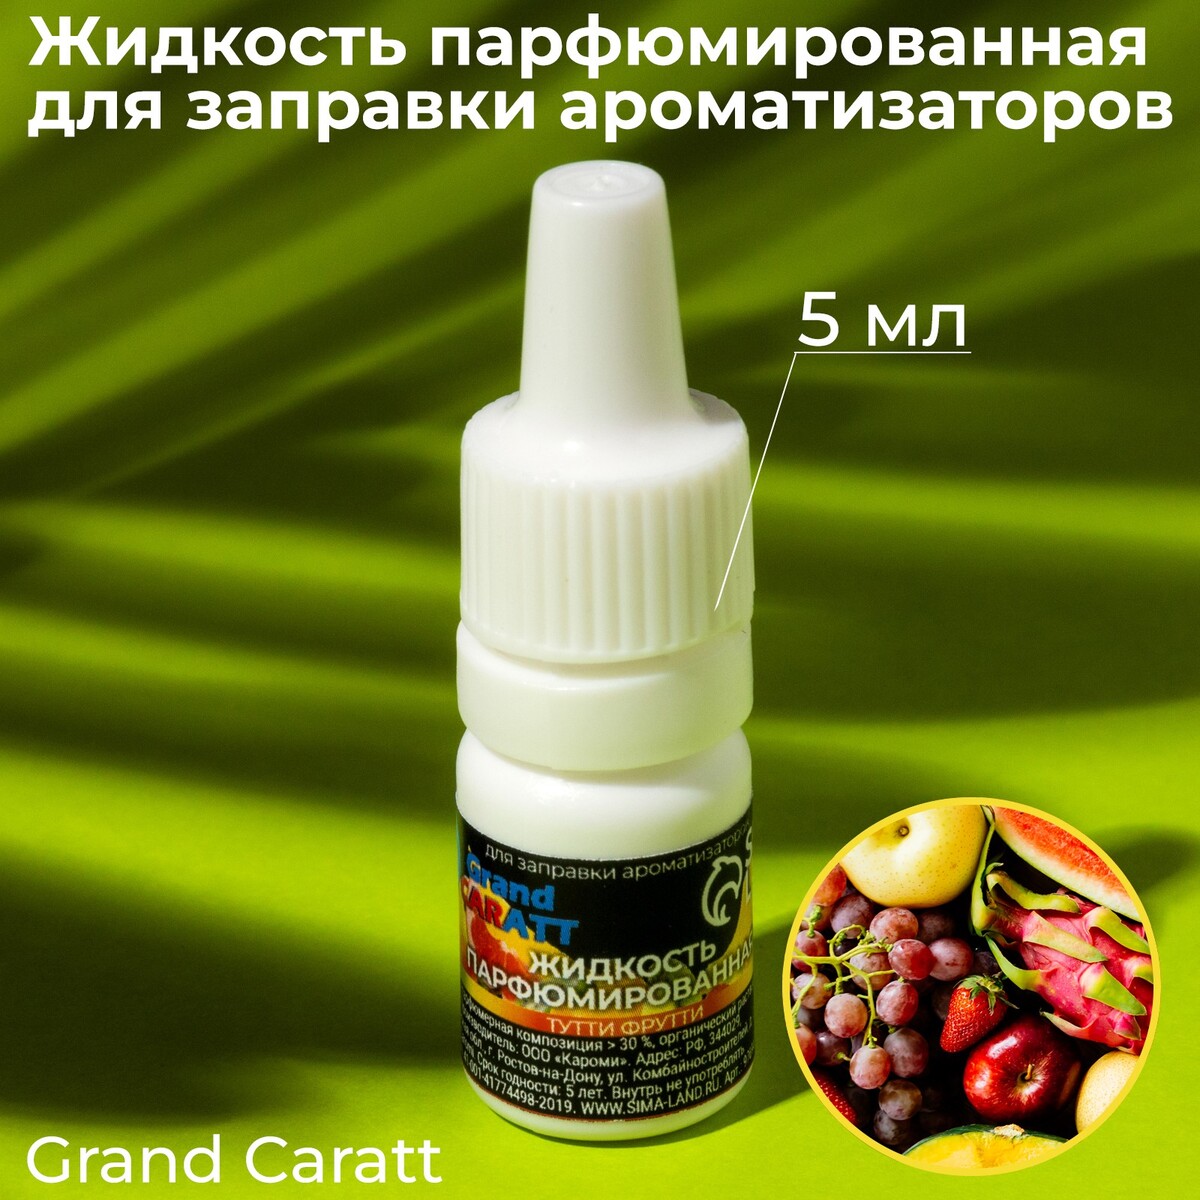 Жидкость парфюмированная grand caratt, для заправки ароматизаторов, тутти-фрутти, 5 мл жидкость парфюмированная grand caratt для заправки ароматизаторов виноград 5 мл